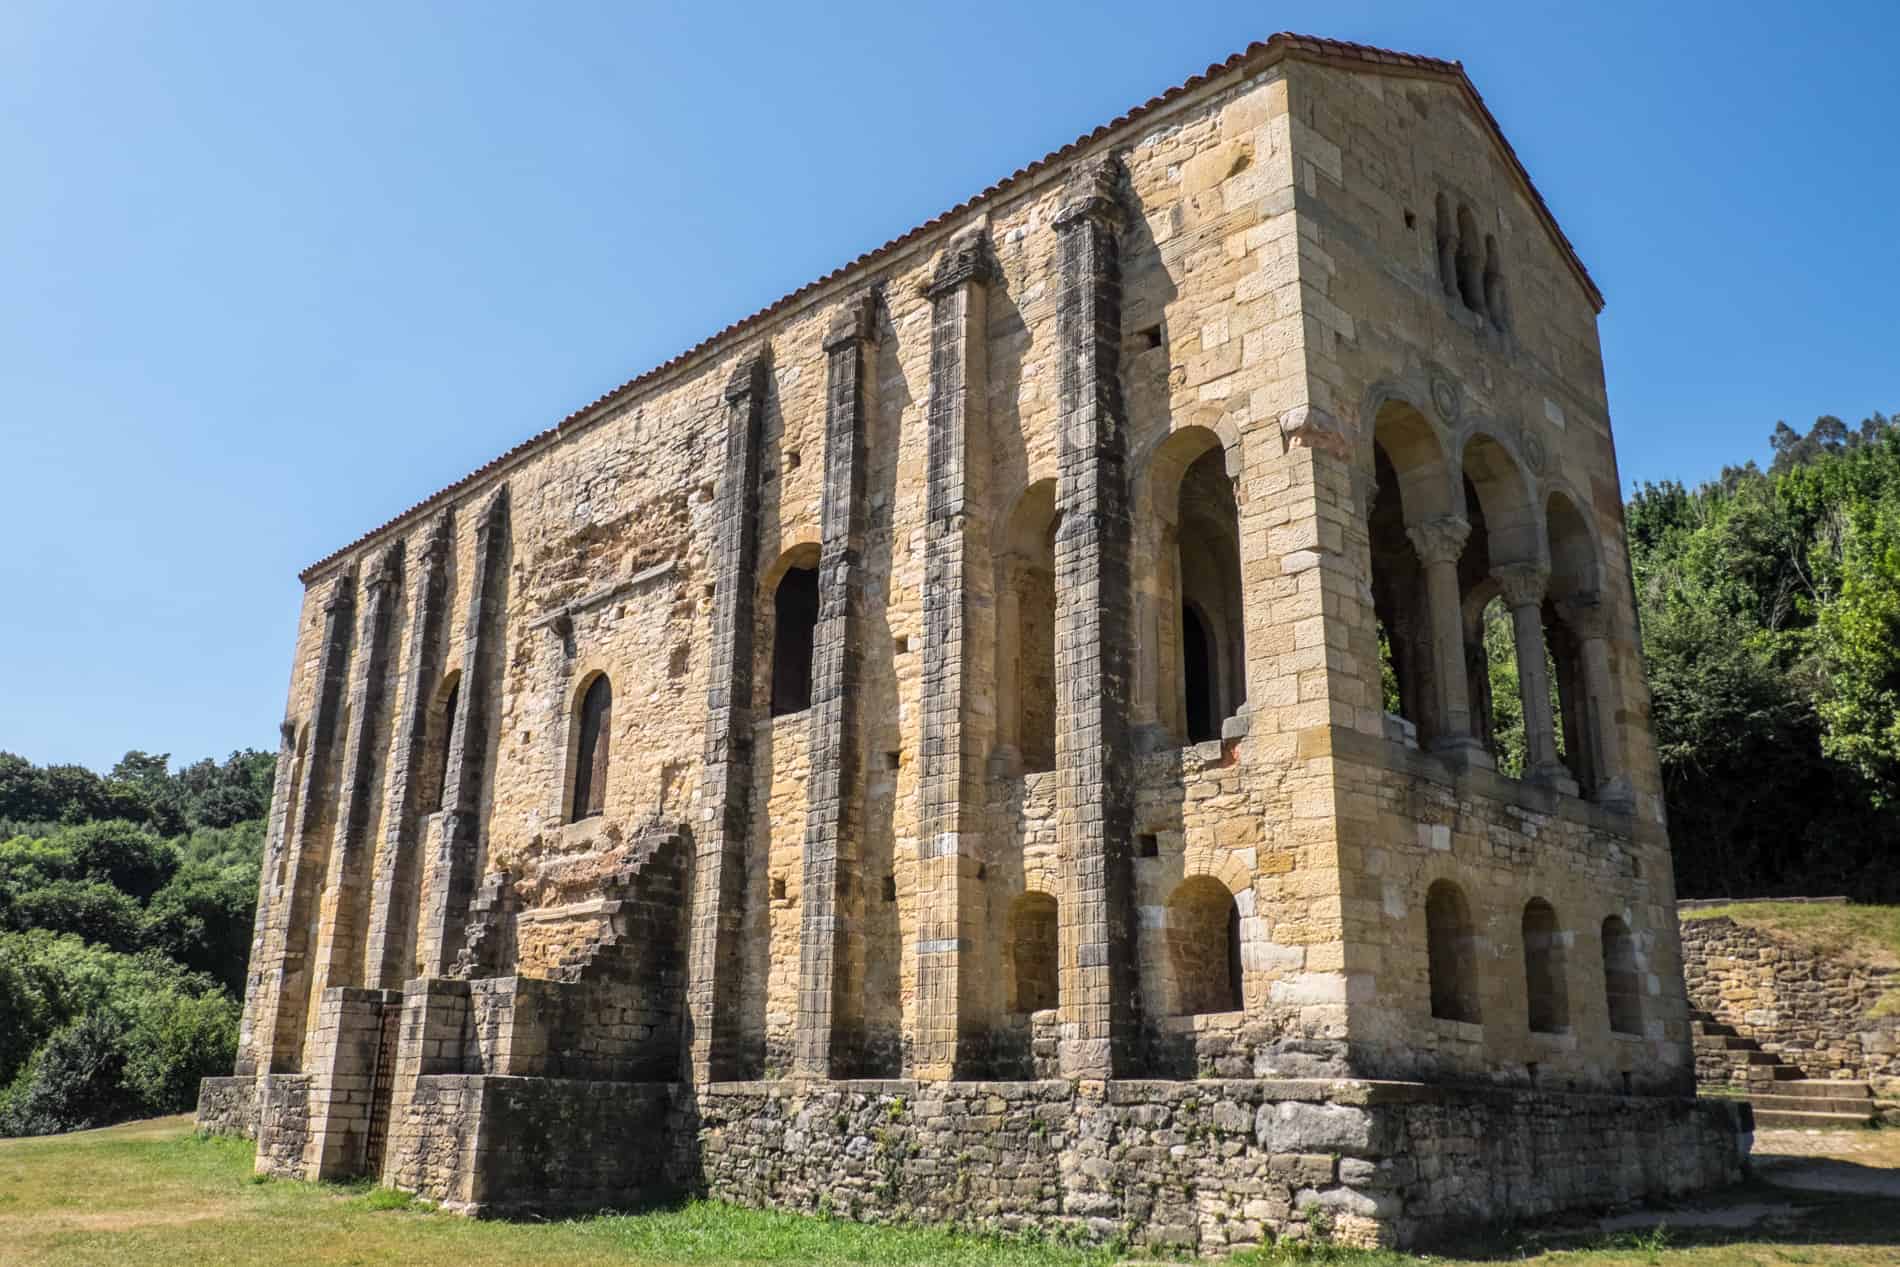 The stone structure of Iglesia de Santa Maria del Naranco, a Pre-Romanesque palace in Oviedo, built in 842. 